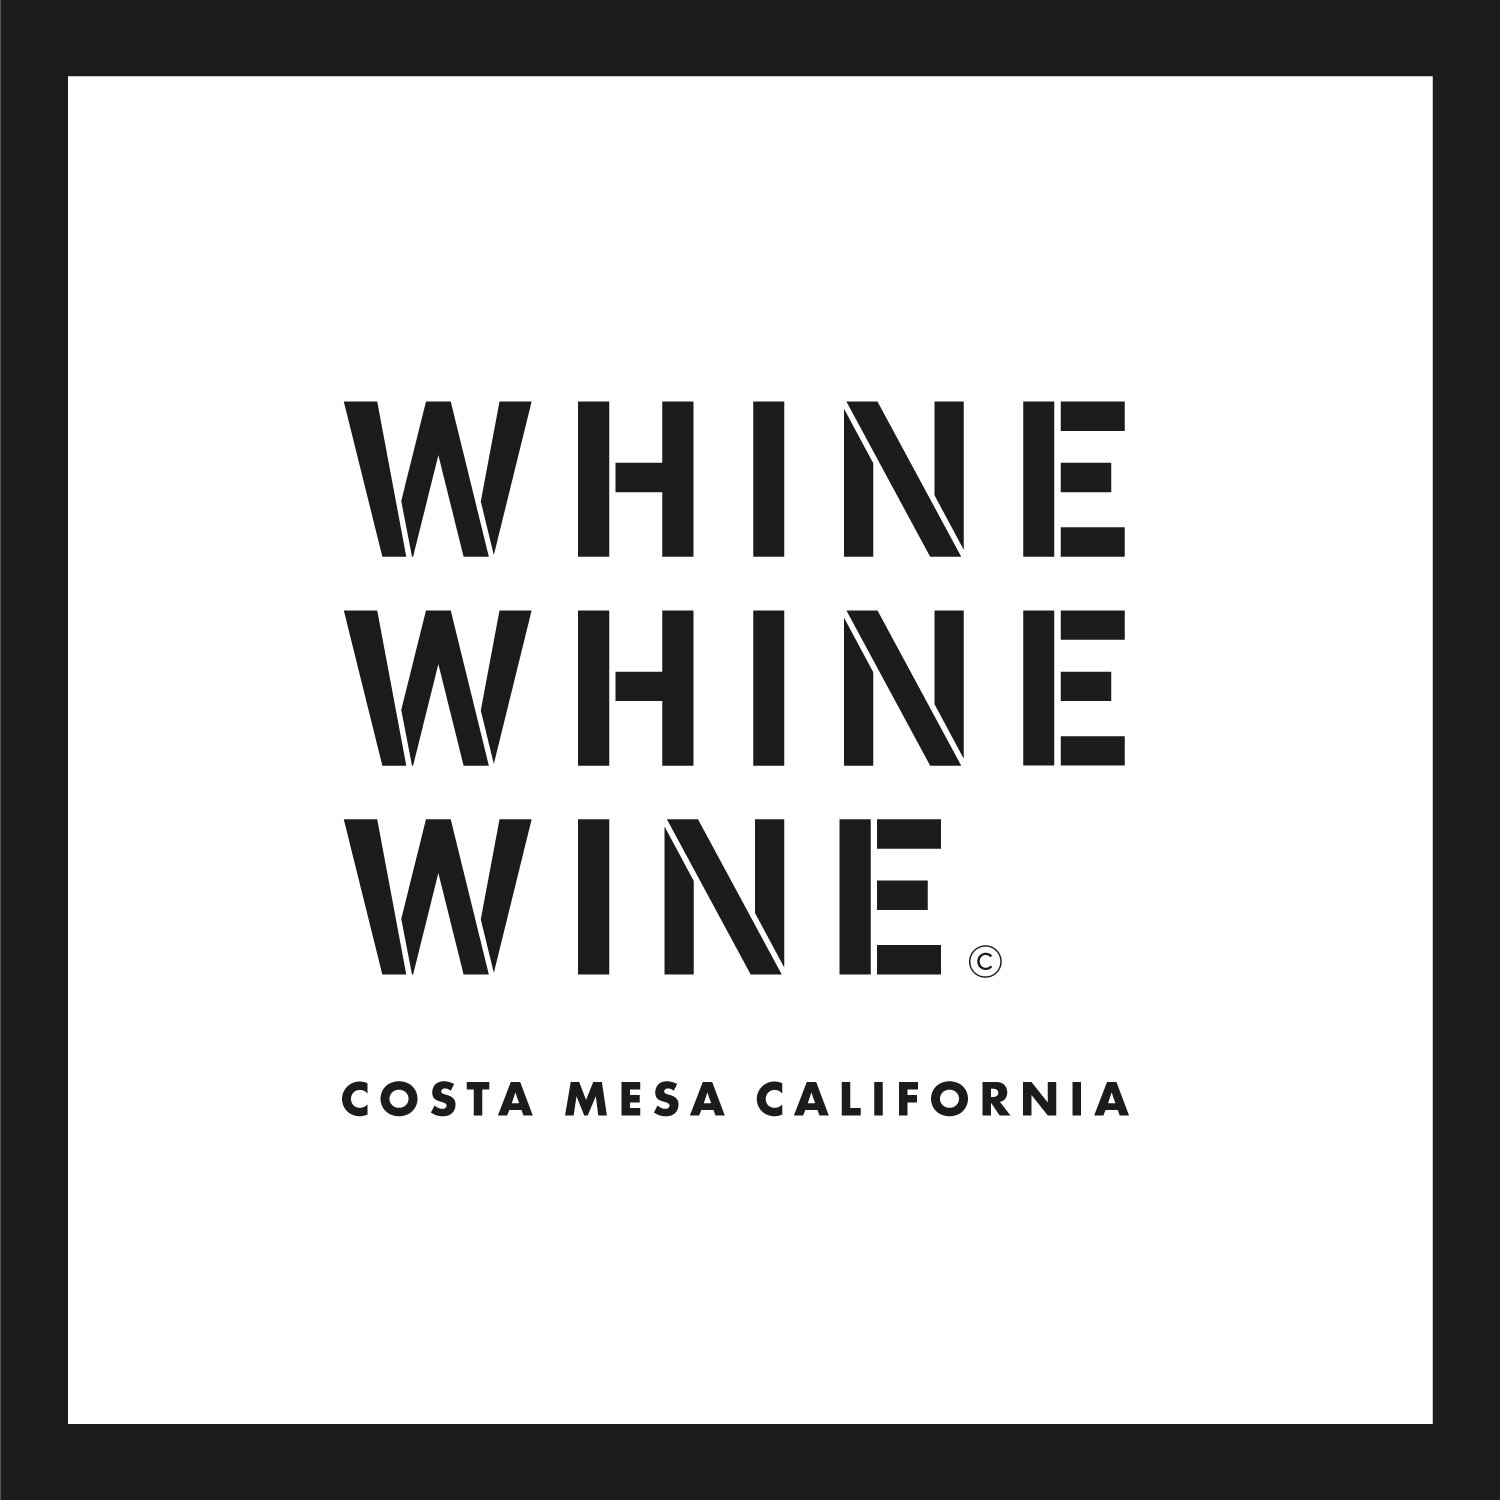 Whine Whine Wine